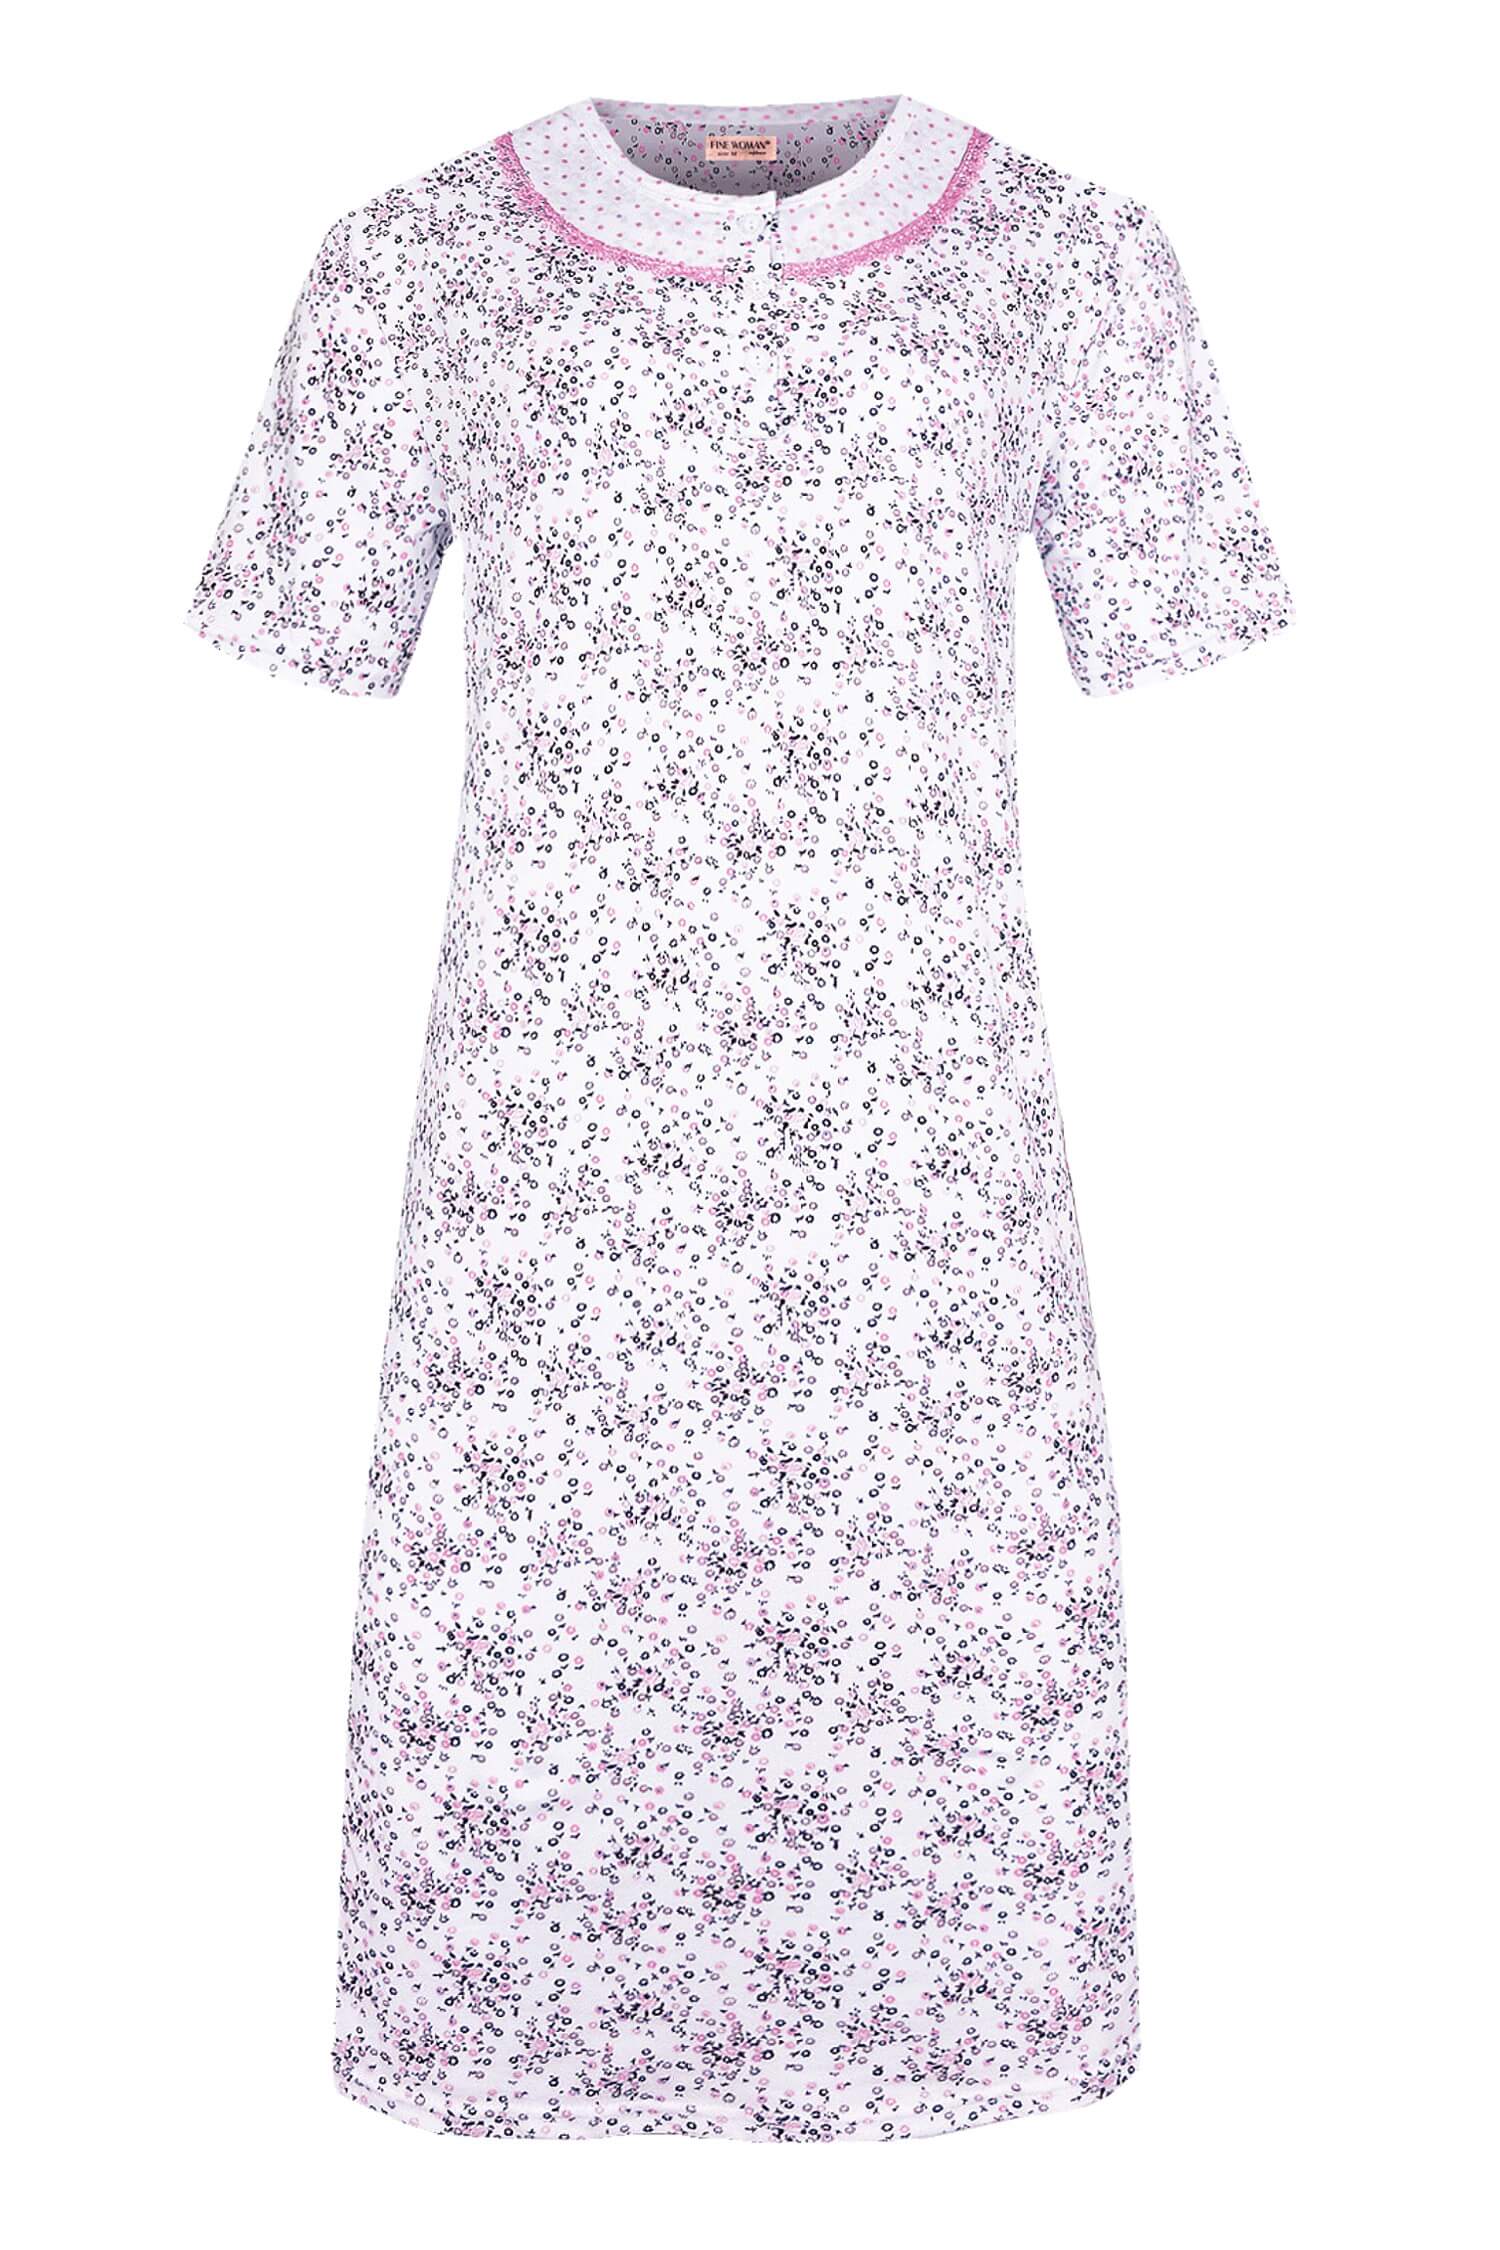 Andělka dámská noční košile krátký rukáv 6530 XL růžová